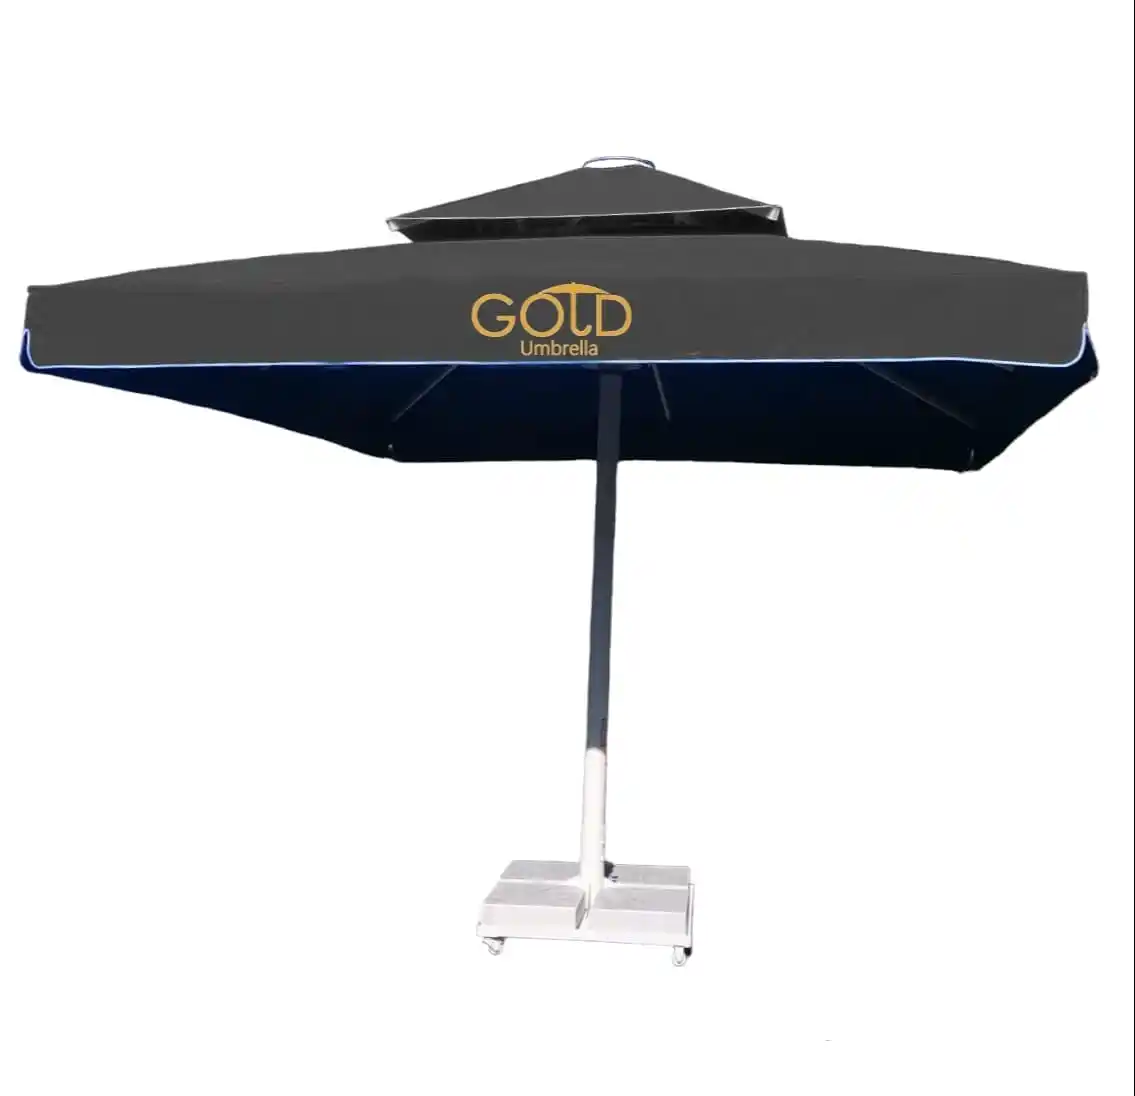 manueller regenschirm mit logodruck cafe und hotel regenschirme outdoor sonnenschirm regenschirm